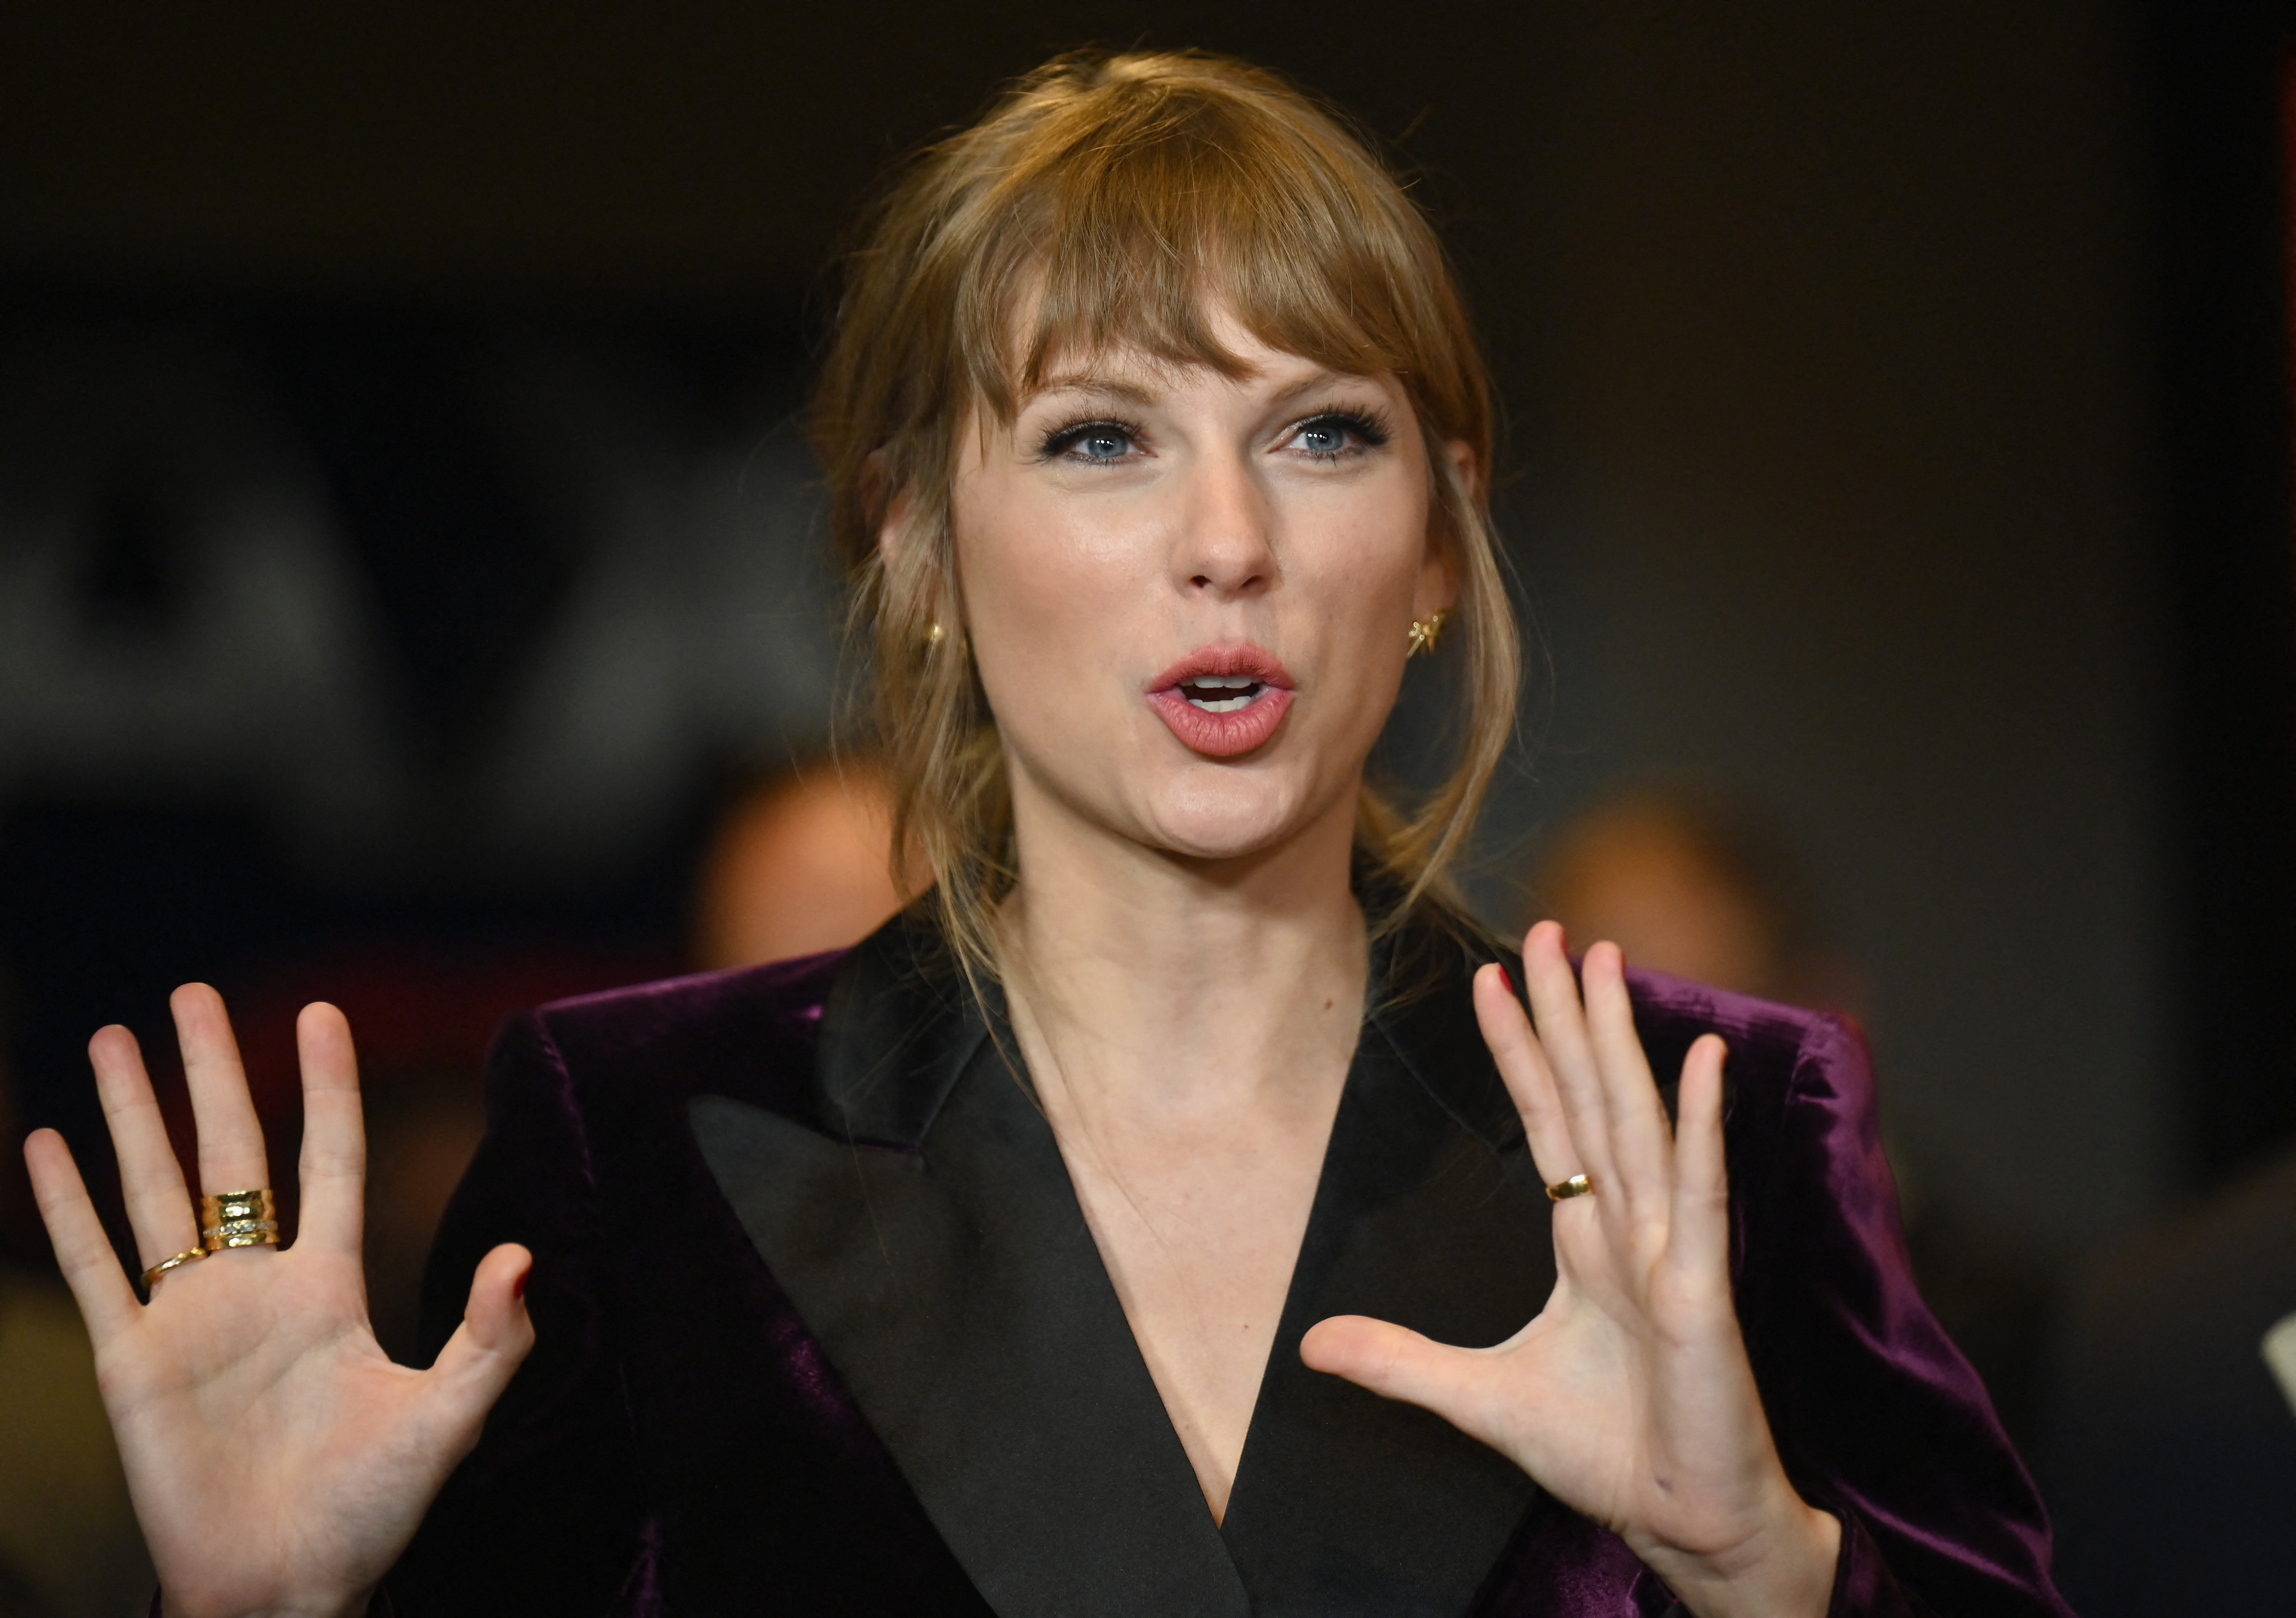 Taylor Swift volt az egyetlen híresség, aki érdemben visszakérdezett, amikor az azóta gigantikus csalással lebukott kriptocég megpróbálta influenszerkedésre bírni